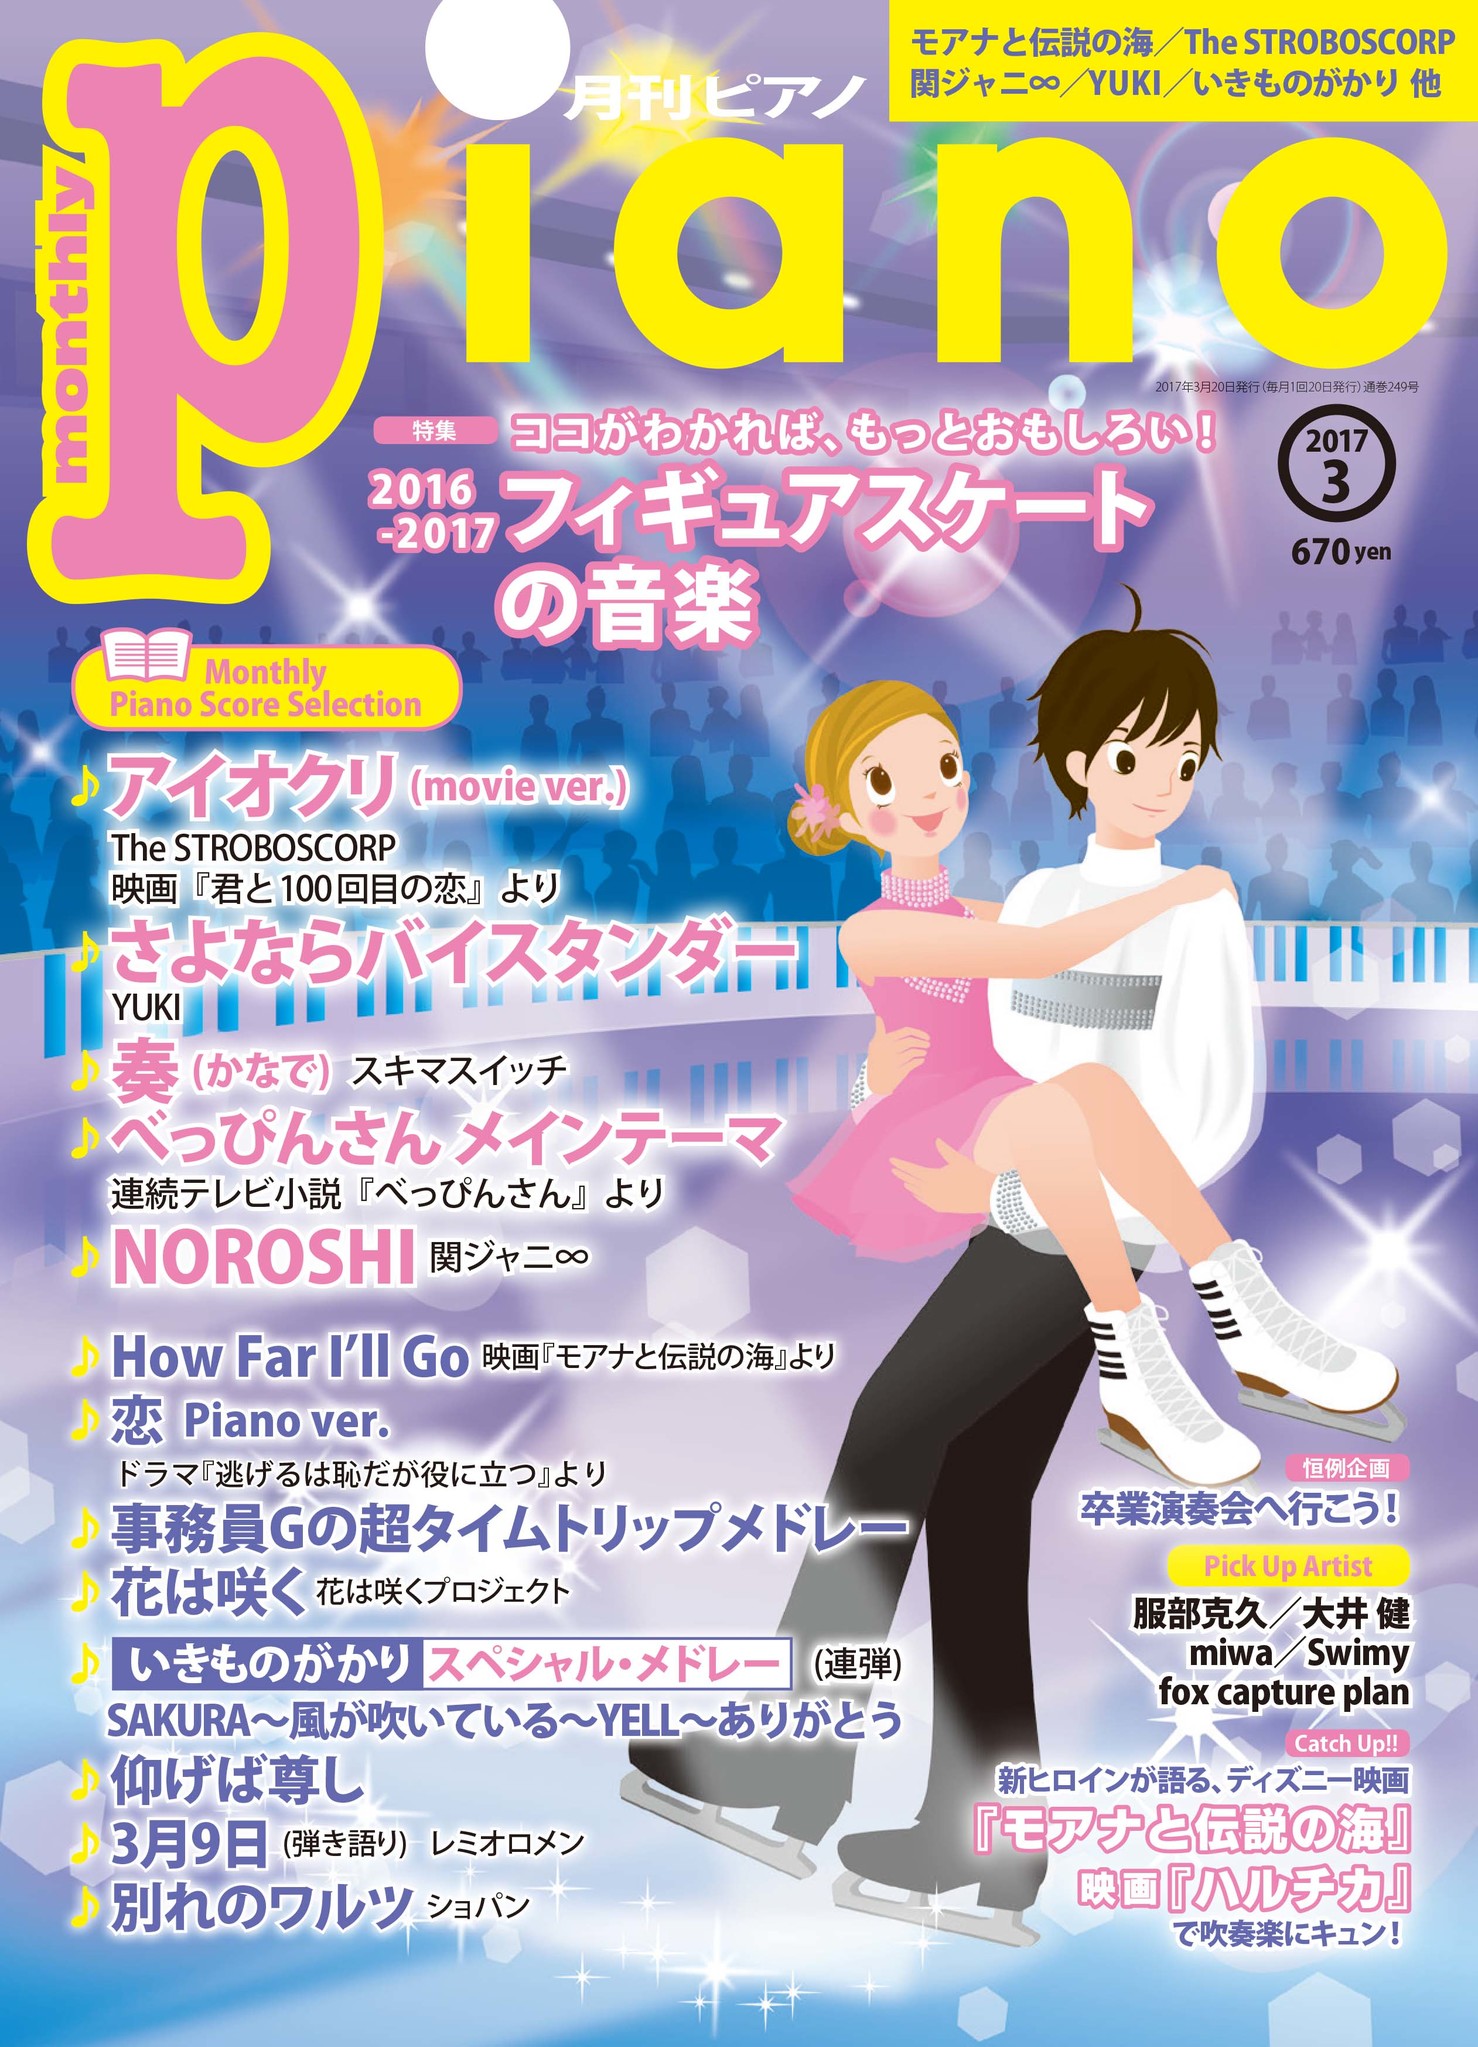 フィギュアスケートの音楽を大特集 月刊ピアノ 3月号 2月日発売 ヤマハミュージックエンタテインメントホールディングスのプレスリリース